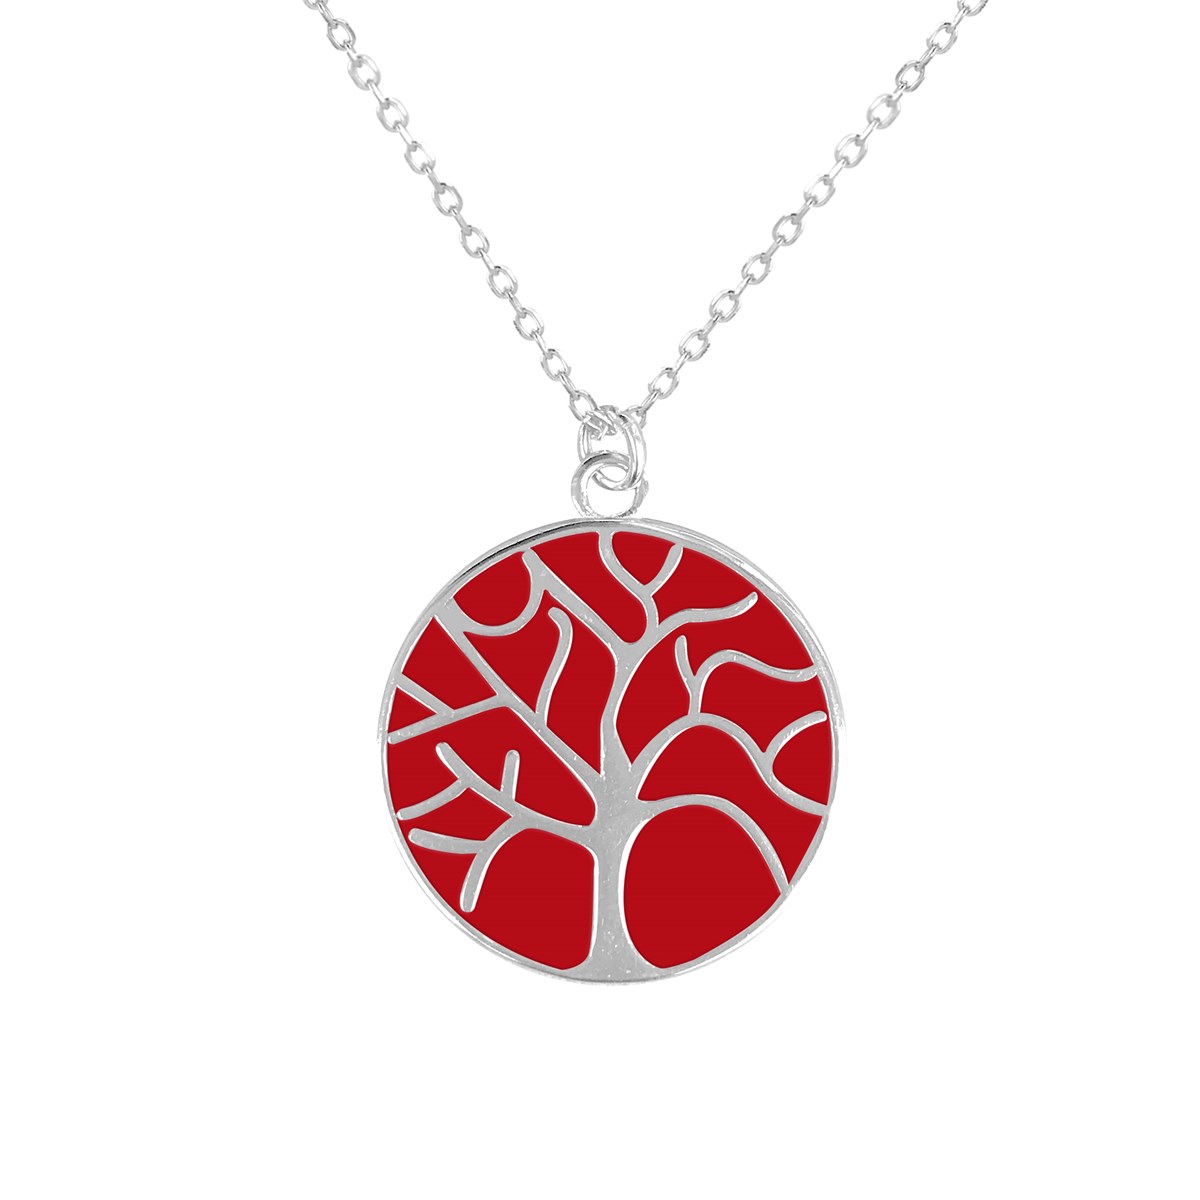 Collier arbre de vie en argent rhodié avec émail rouge